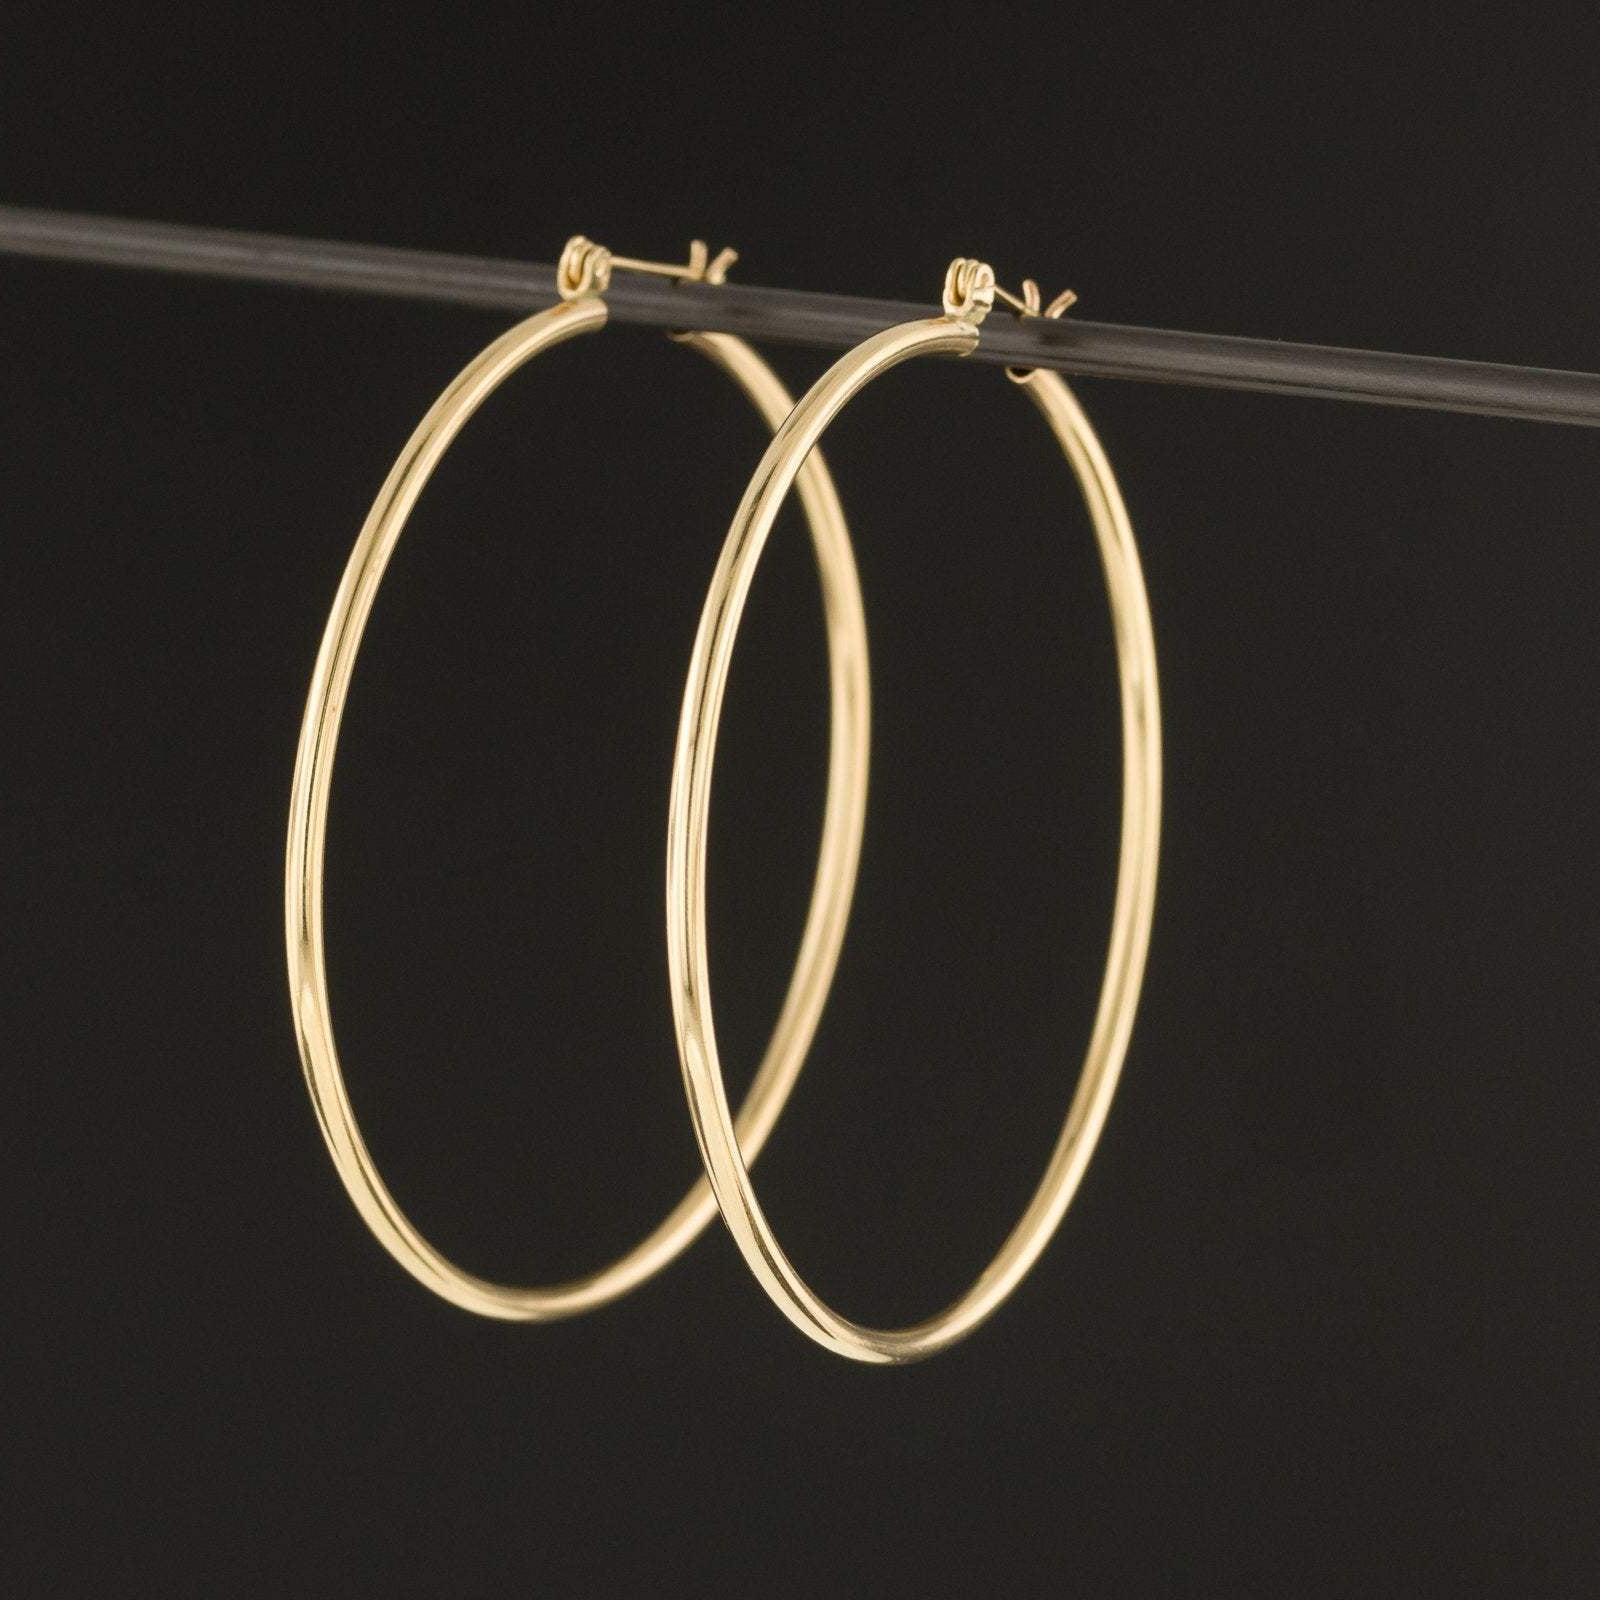 14k Gold Hoop Earrings | Vintage Gold Earrings | Large Round Hoop Earrings